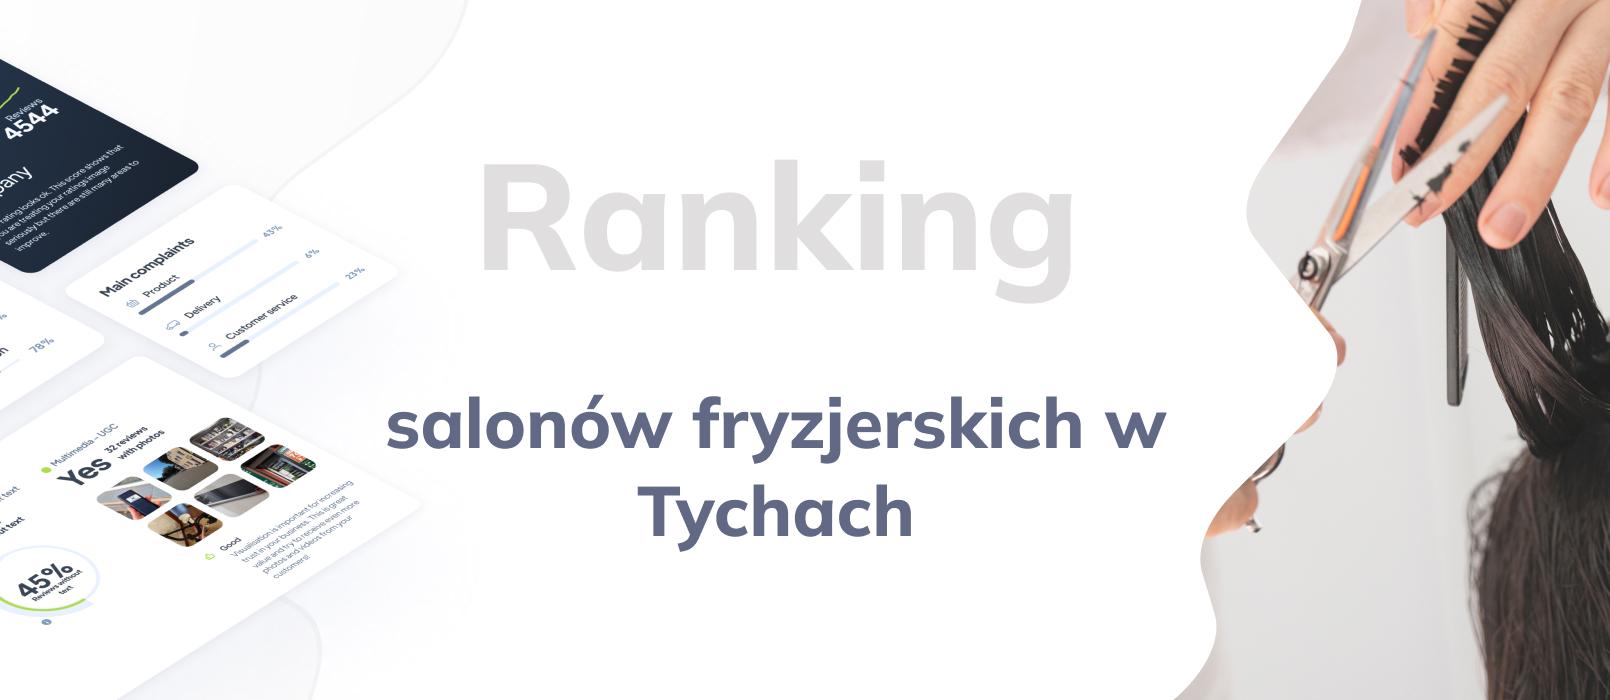 Salony fryzjerskie w Tychach - ranking TOP 10